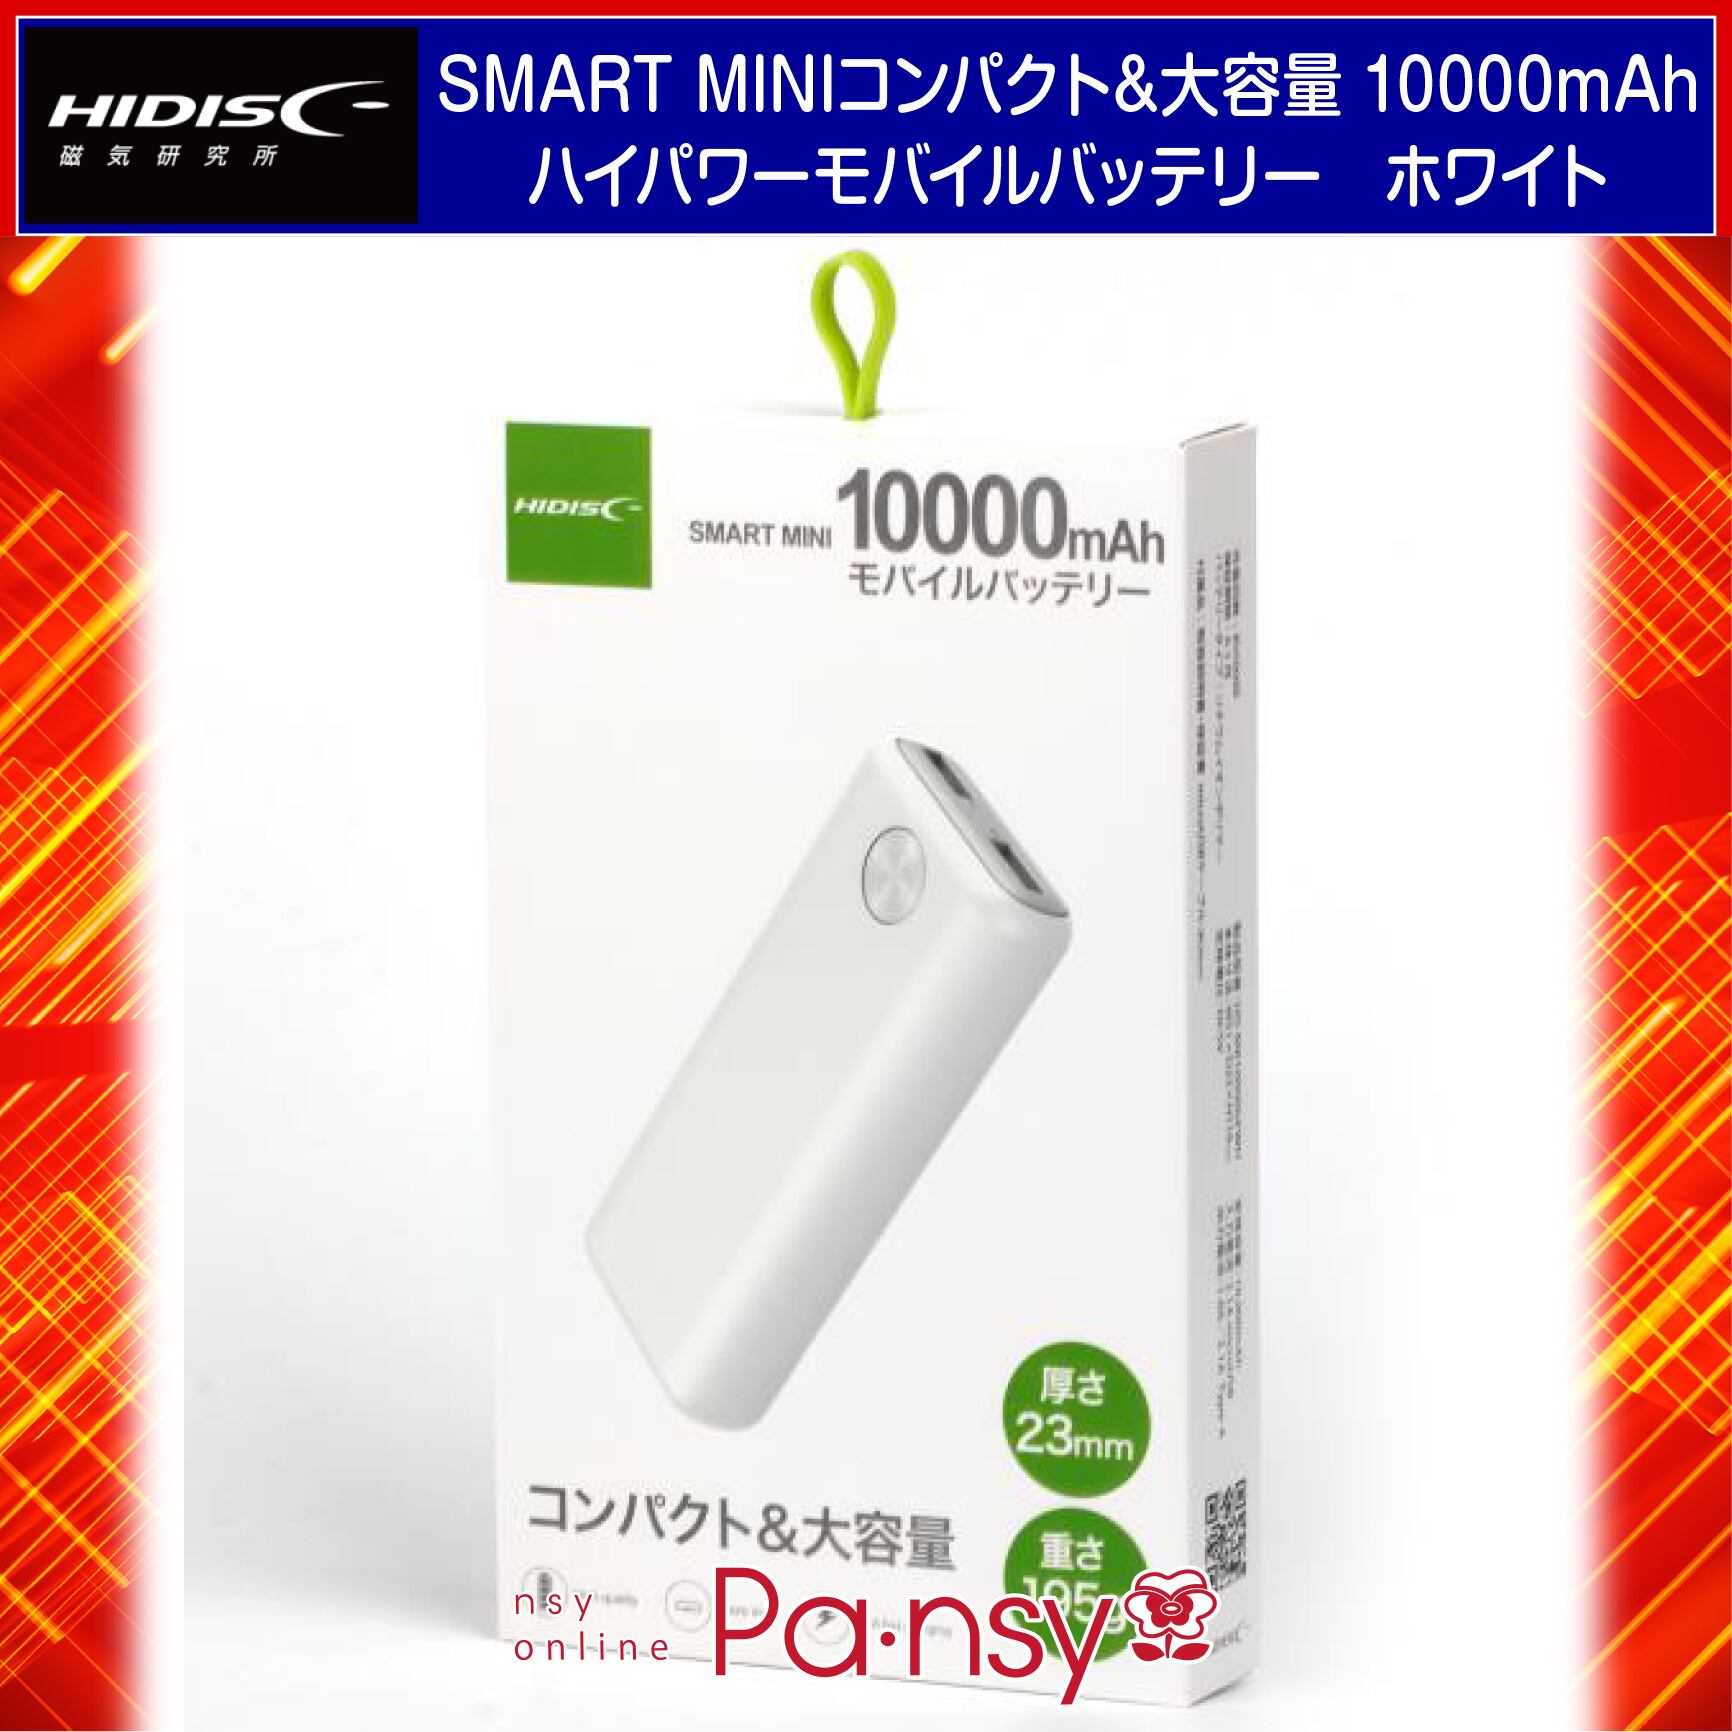 SMART MINI コンパクト&大容量 10000mAh ハイパワーモバイルバッテリー